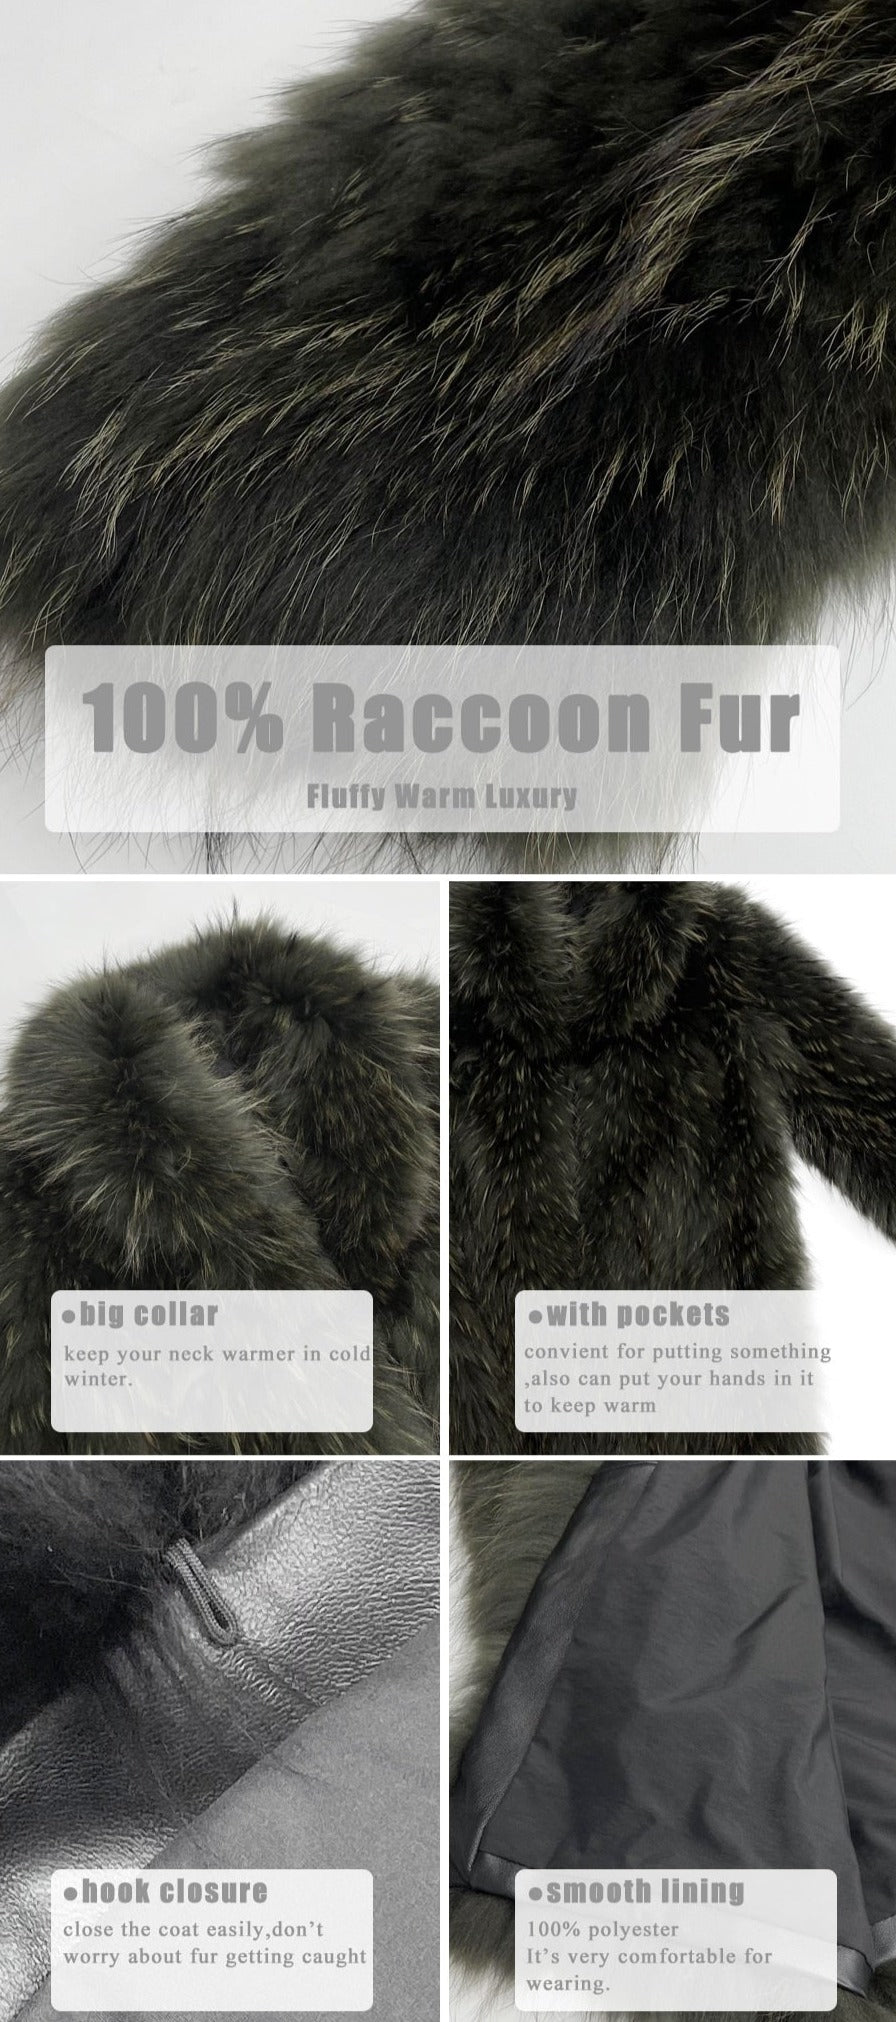 Real Fur Knee Length Full Pelt Fox Fur Coats